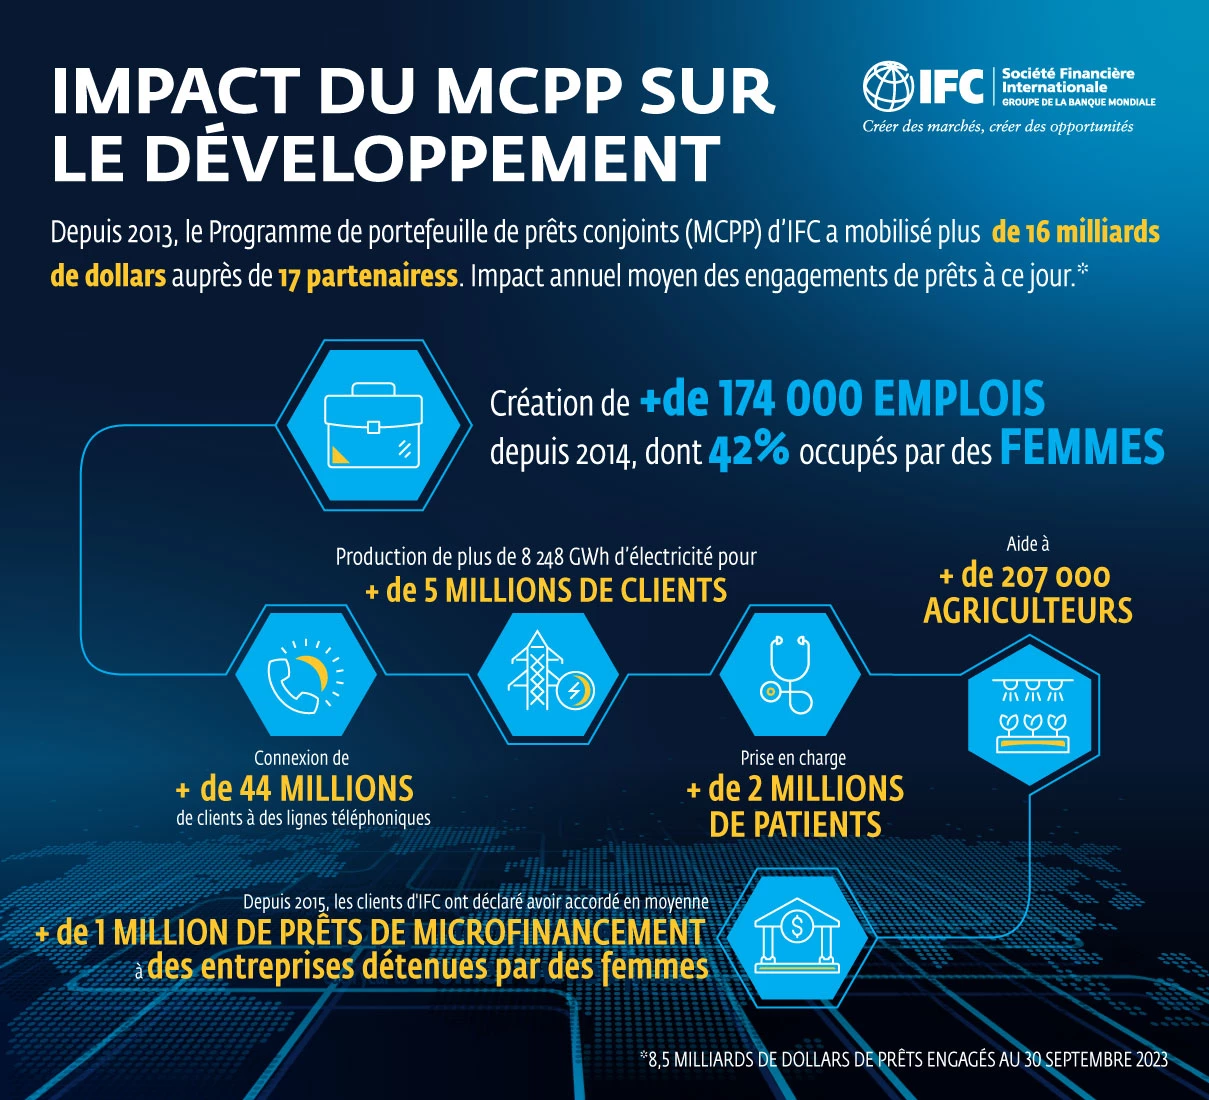 Impact du MCPP sur le développement (infographie)